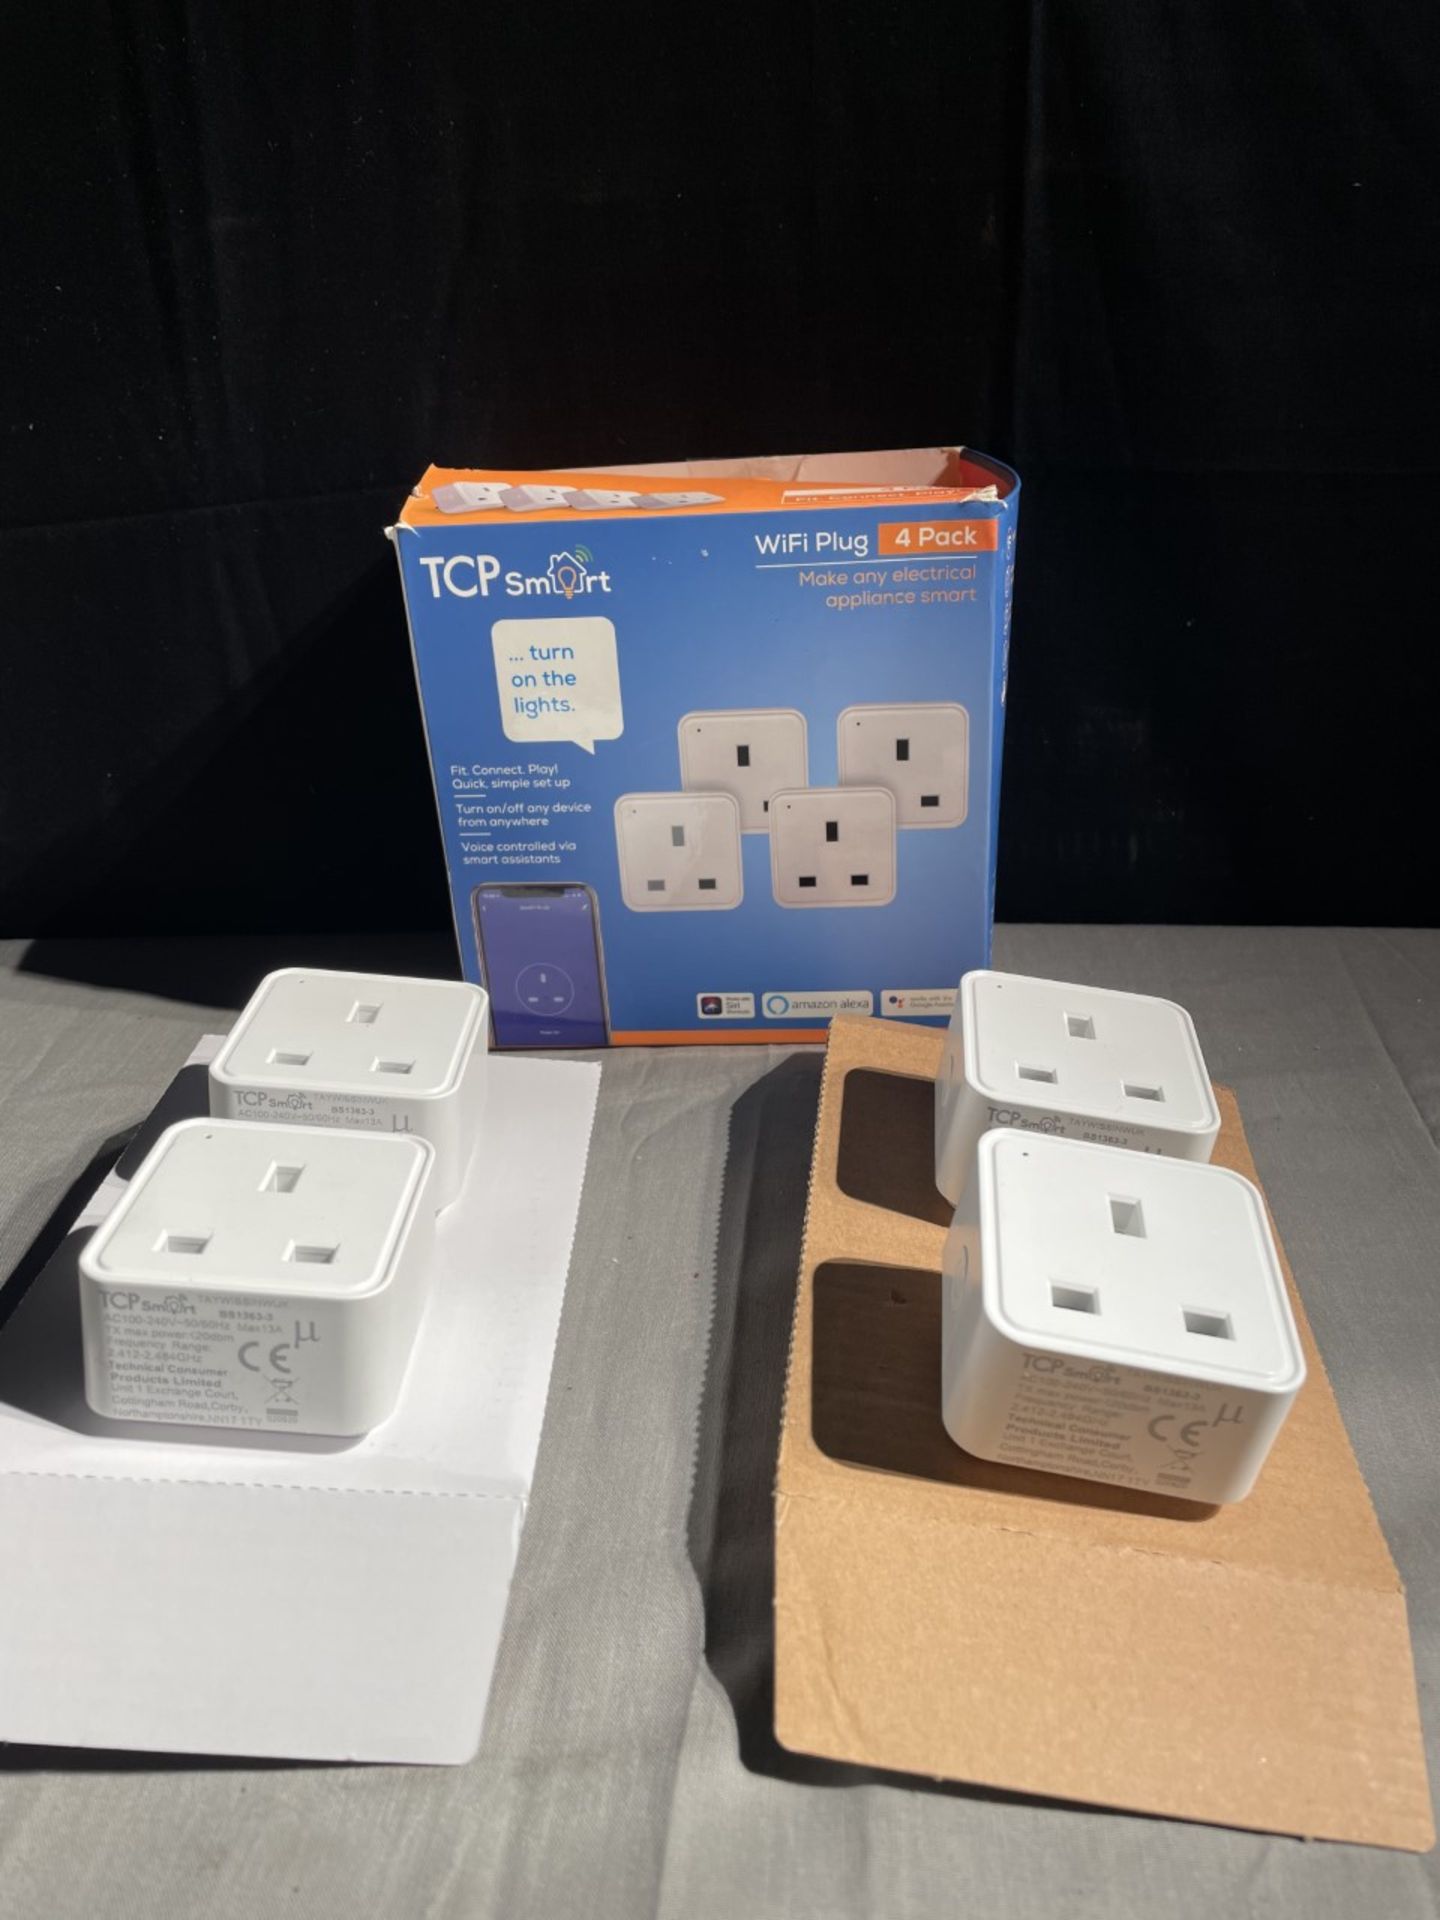 1x new box of TCP Smart Wi-Fi plugs. Box contains 4 plugs